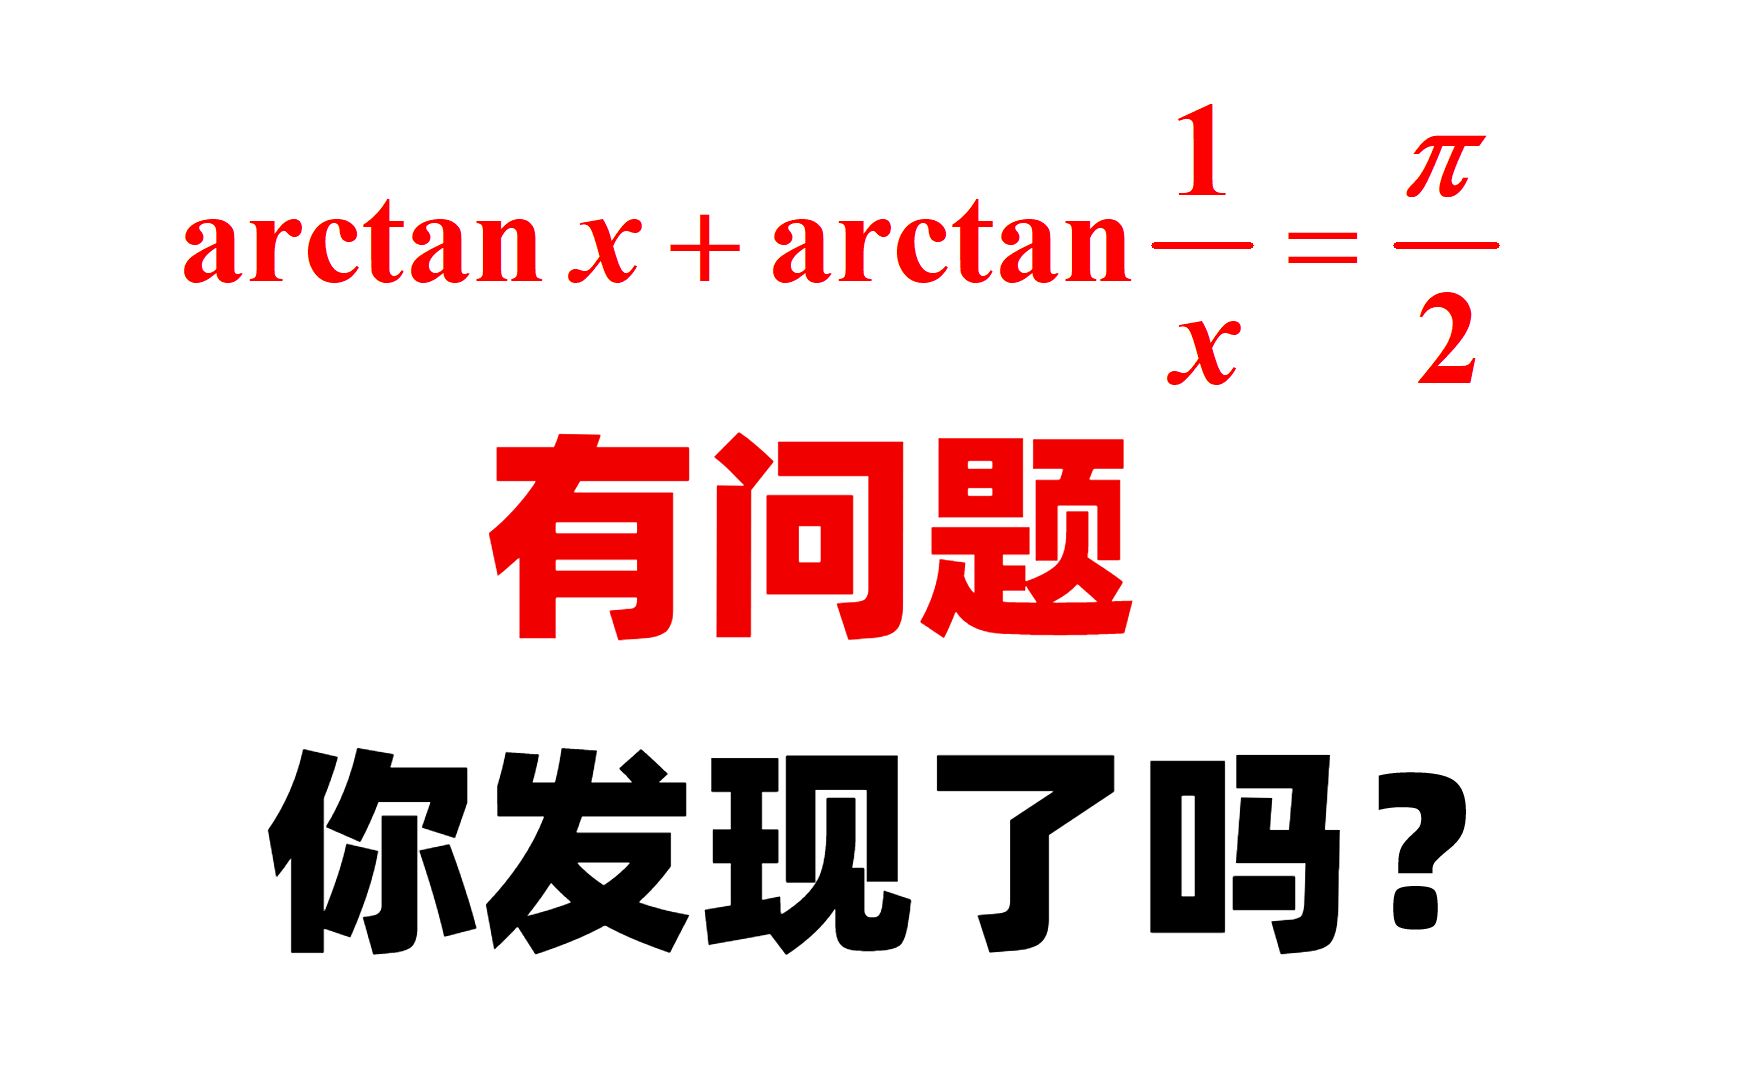 arctanx有关的积分